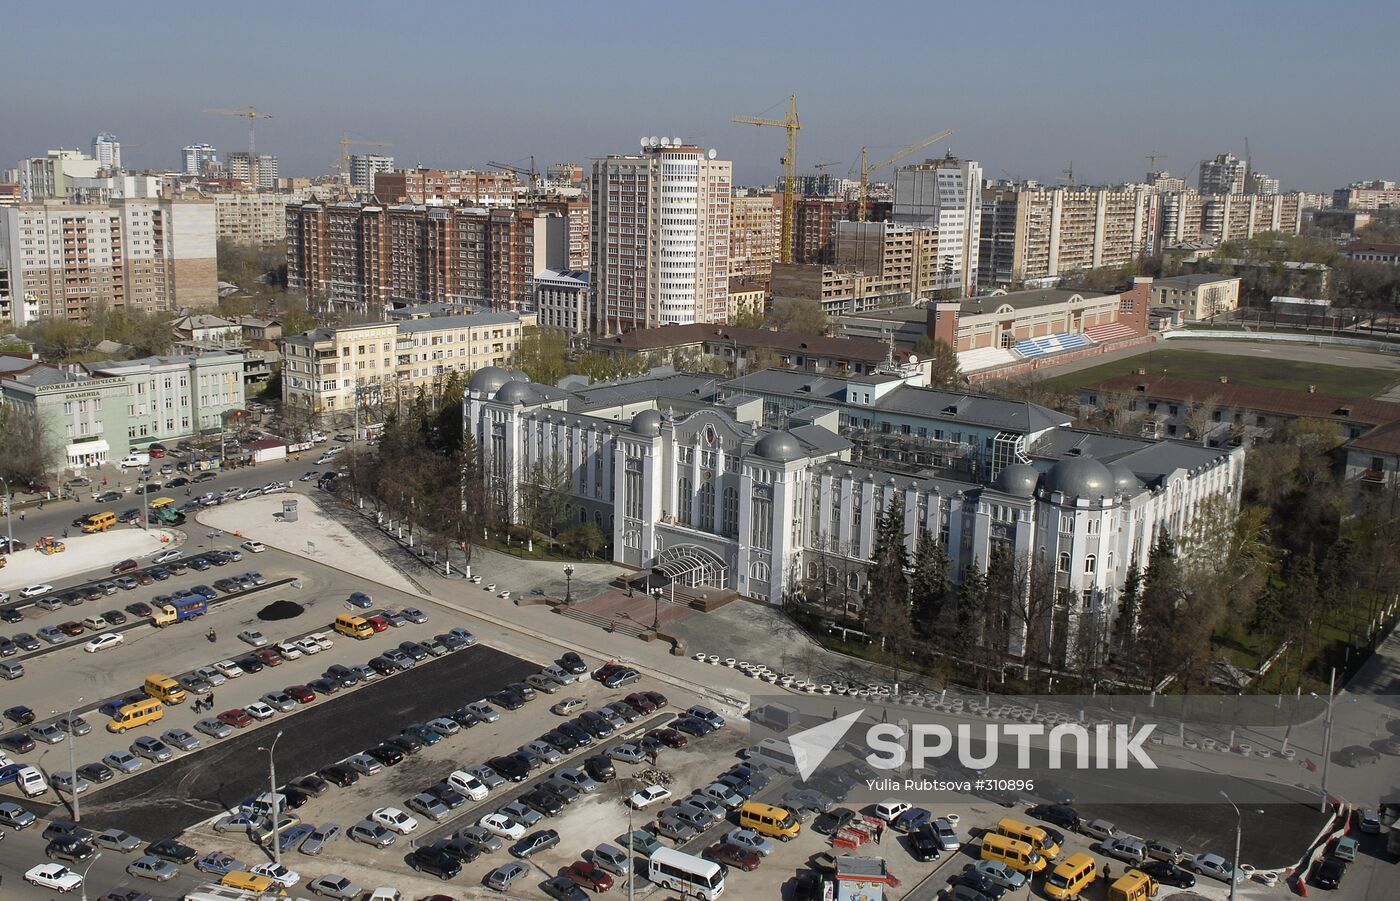 A view of Samara